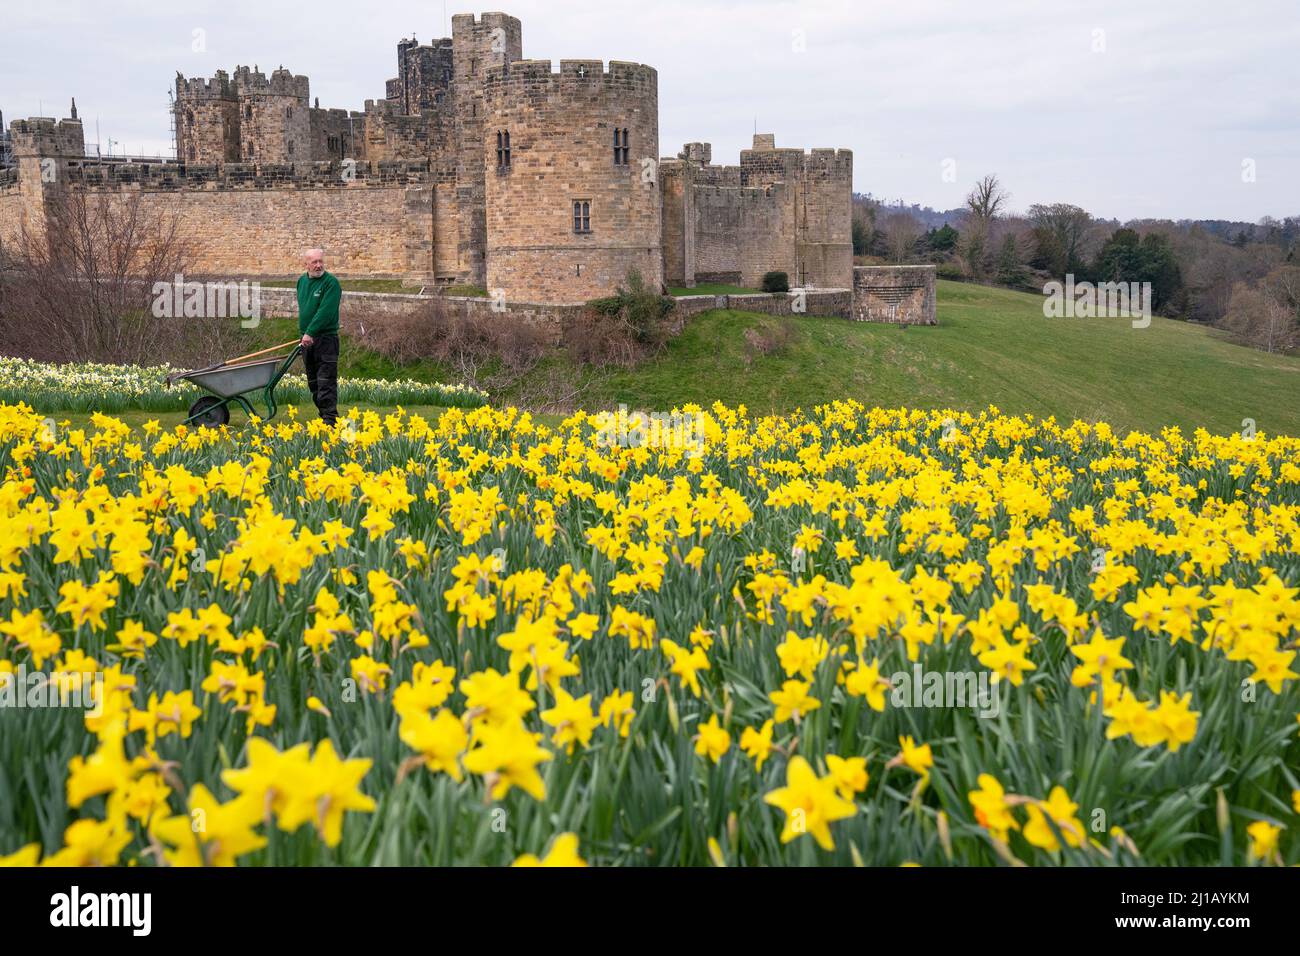 George Swordy, 55, Leiter gardner auf Schloss Alnwick, überprüft die Gärten vor der Eröffnung des Schlosses morgen. Bilddatum: Donnerstag, 24. März 2022. Stockfoto